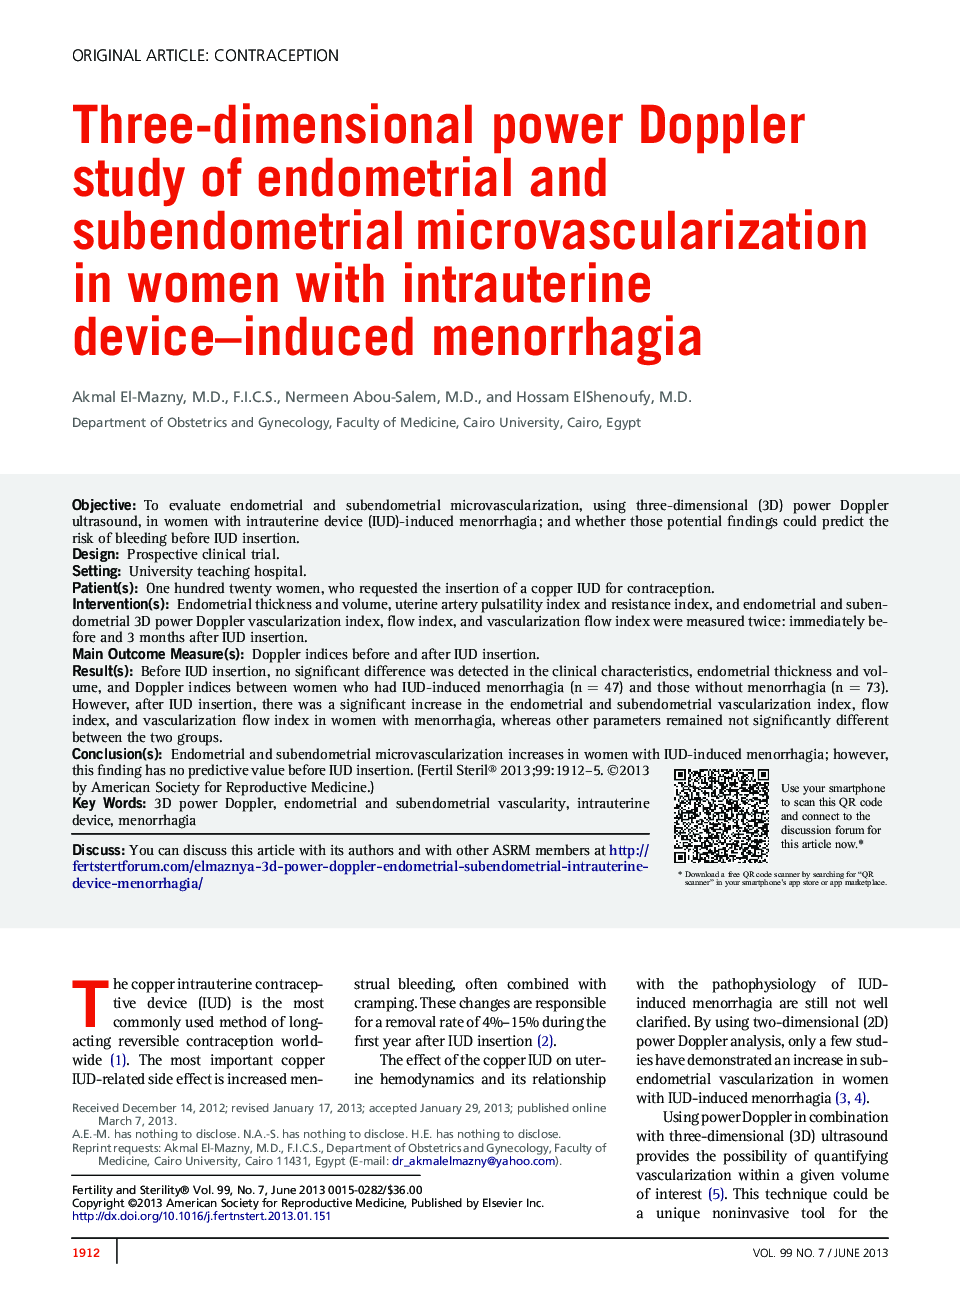 مطالعه دوپلر قدرت سه بعدی در مورد میکرواراسکولاریزاسیون آندومتر و سوندومتر در زنان مبتلا به منوراژی ناشی از دستگاه ادراری 